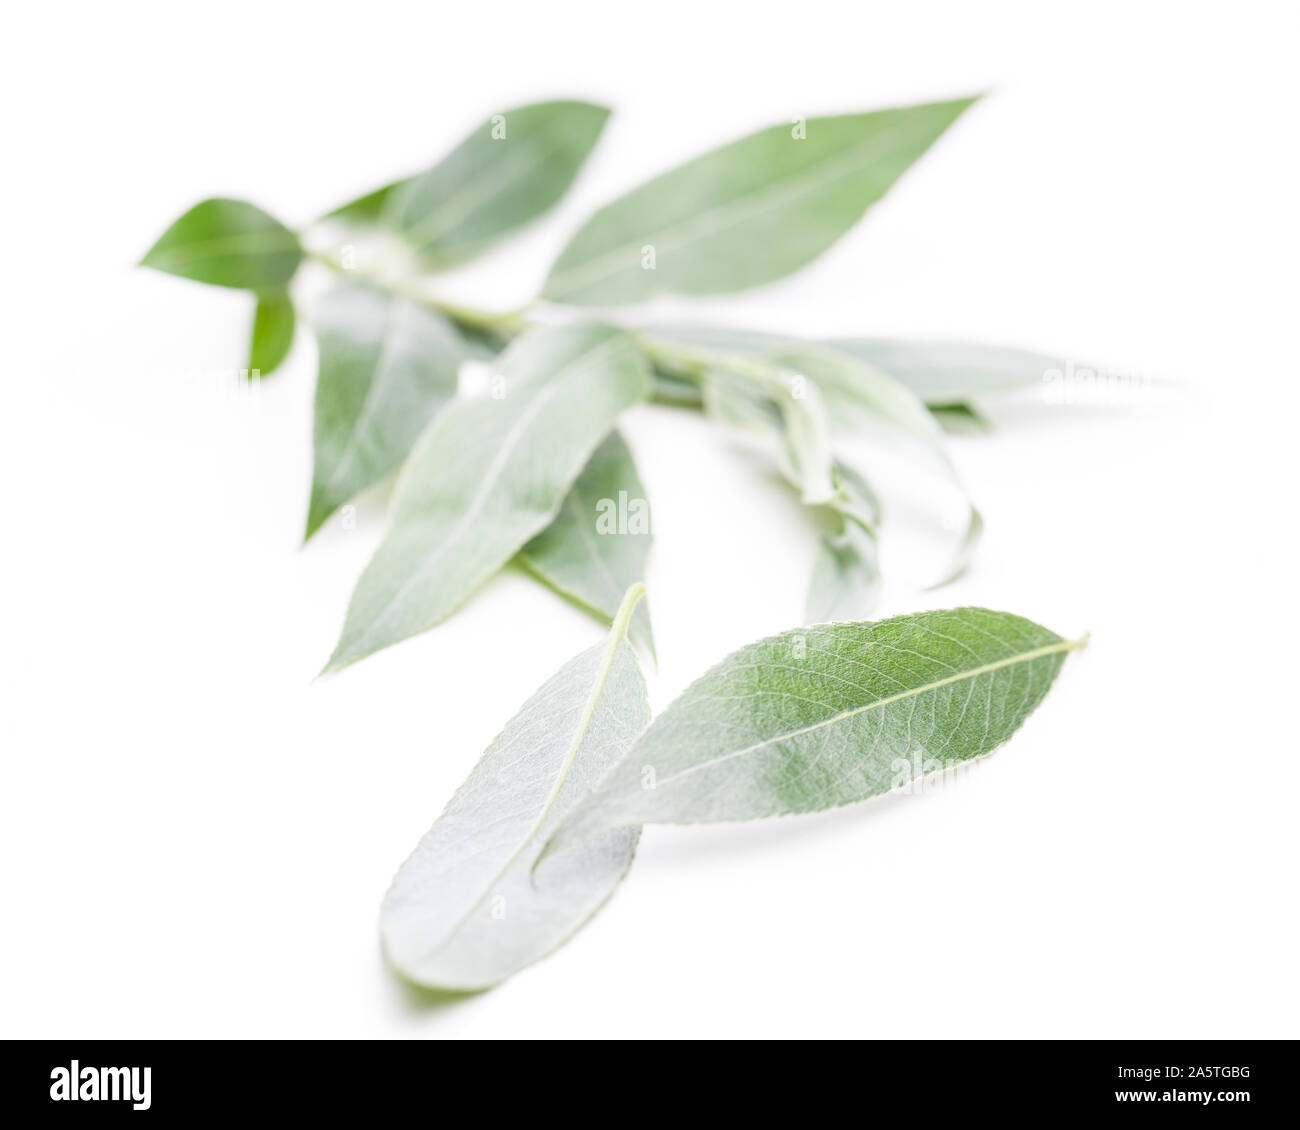 White willow (Salix alba) twig on a white background Stock Photo